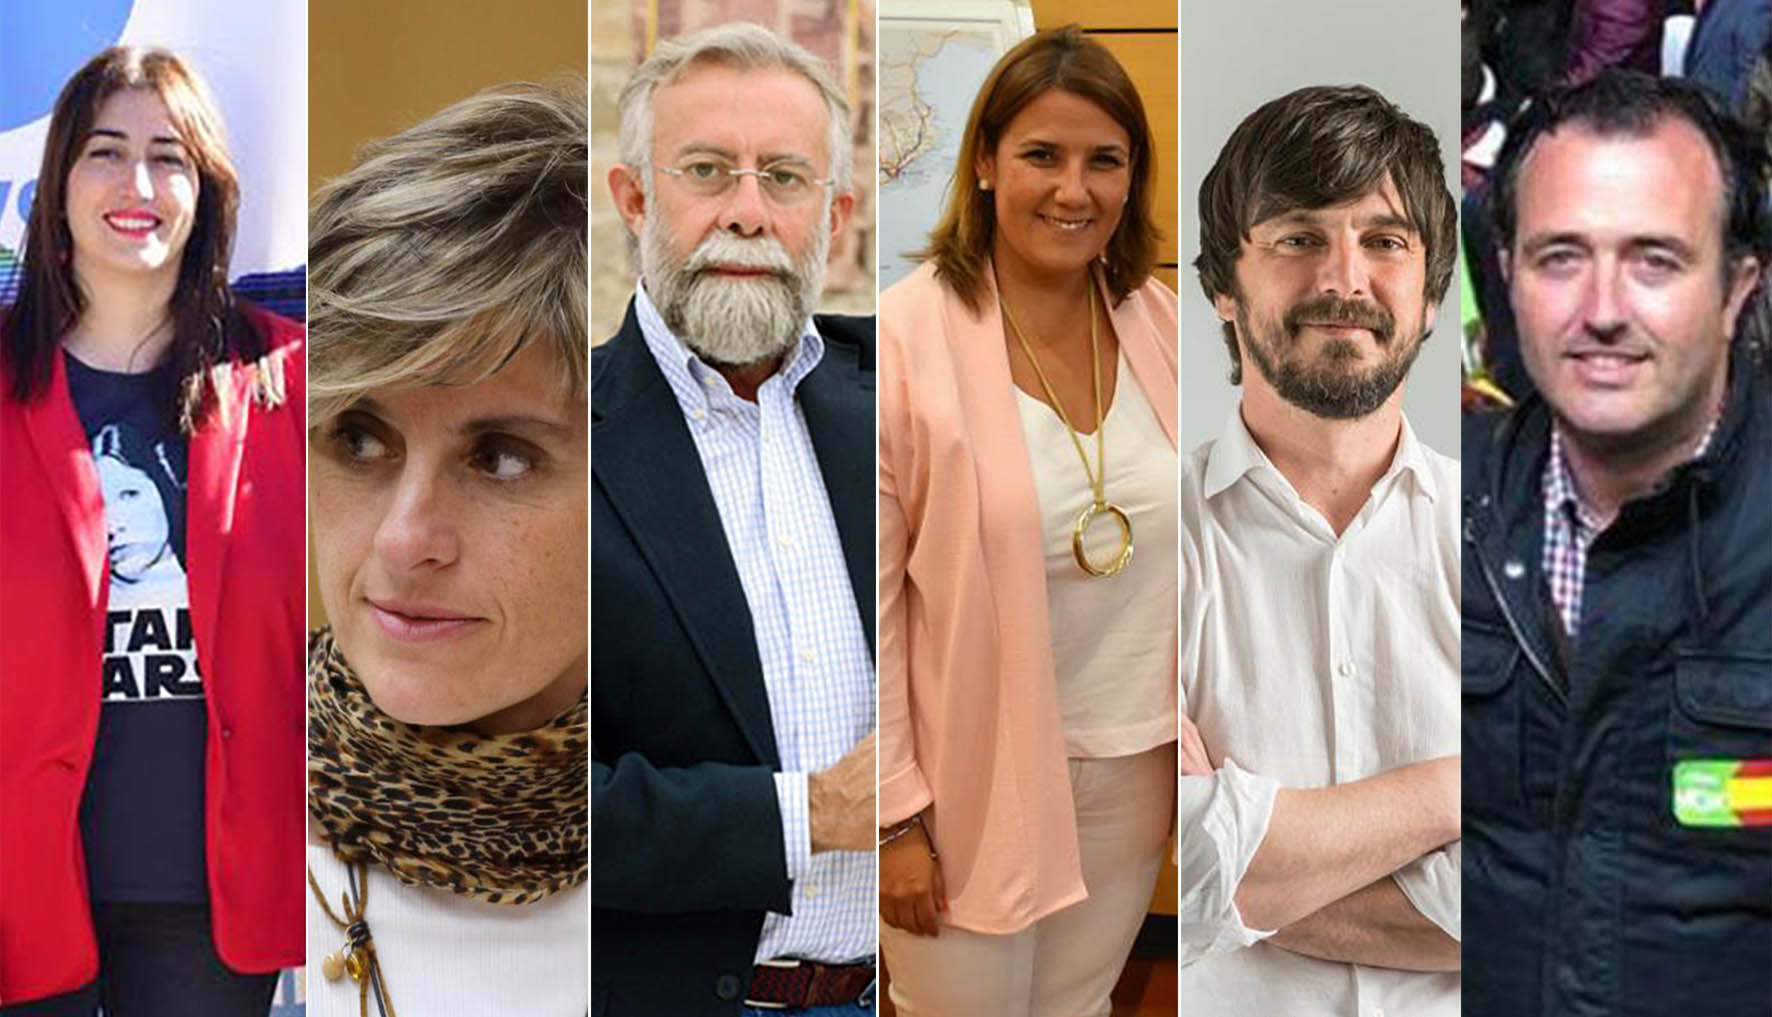 Sonsoles Arnao, Susana Hernández, Jaime Ramos, Tita García Élez, Sergio Ortiz y David Moreno.